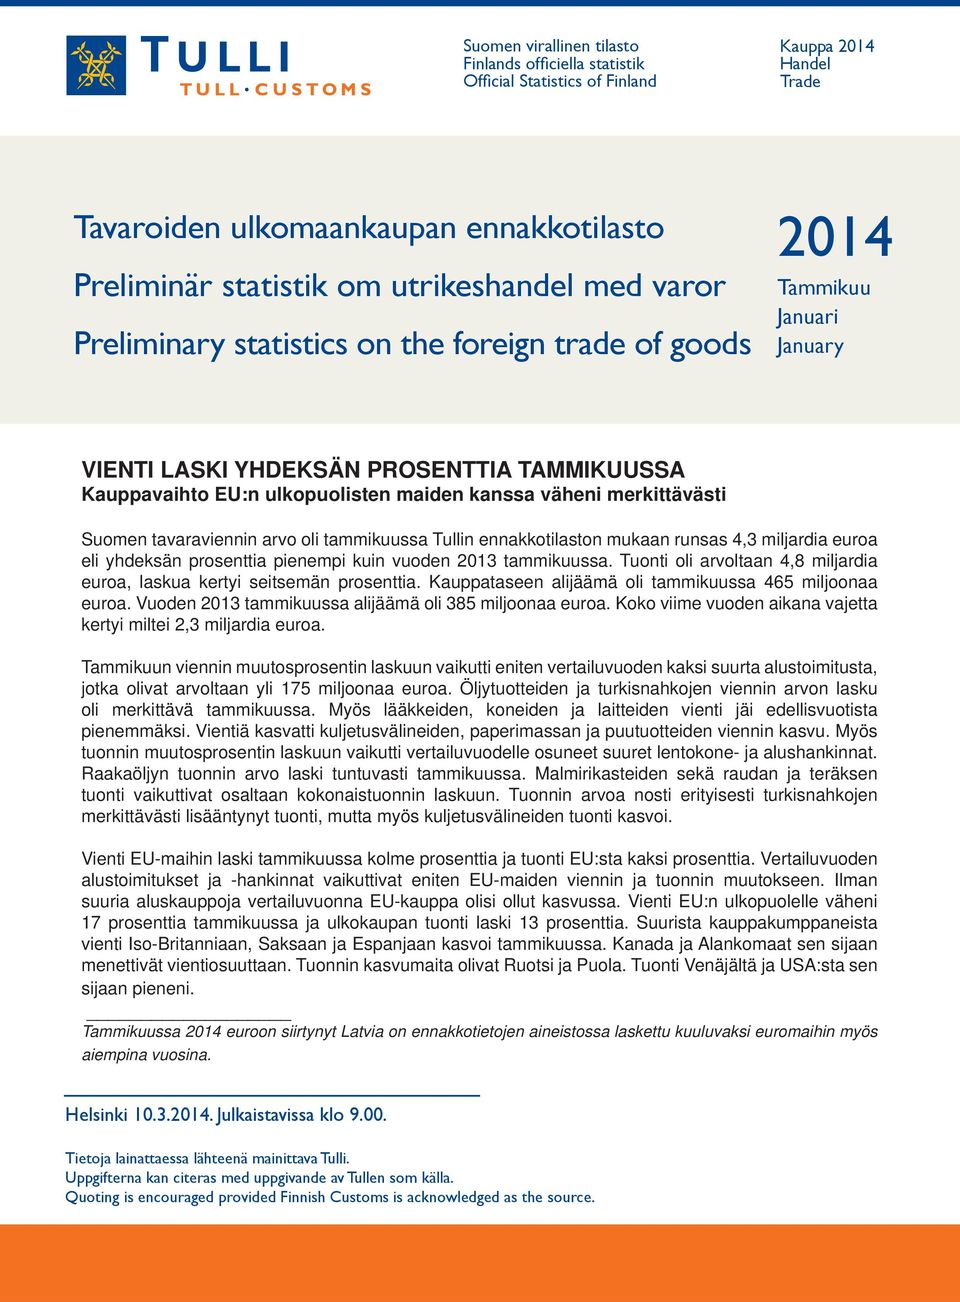 Suomen tavaraviennin arvo oli tammikuussa n ennakkotilaston mukaan runsas 4,3 miljardia euroa eli yhdeksän prosenttia pienempi kuin vuoden 203 tammikuussa.